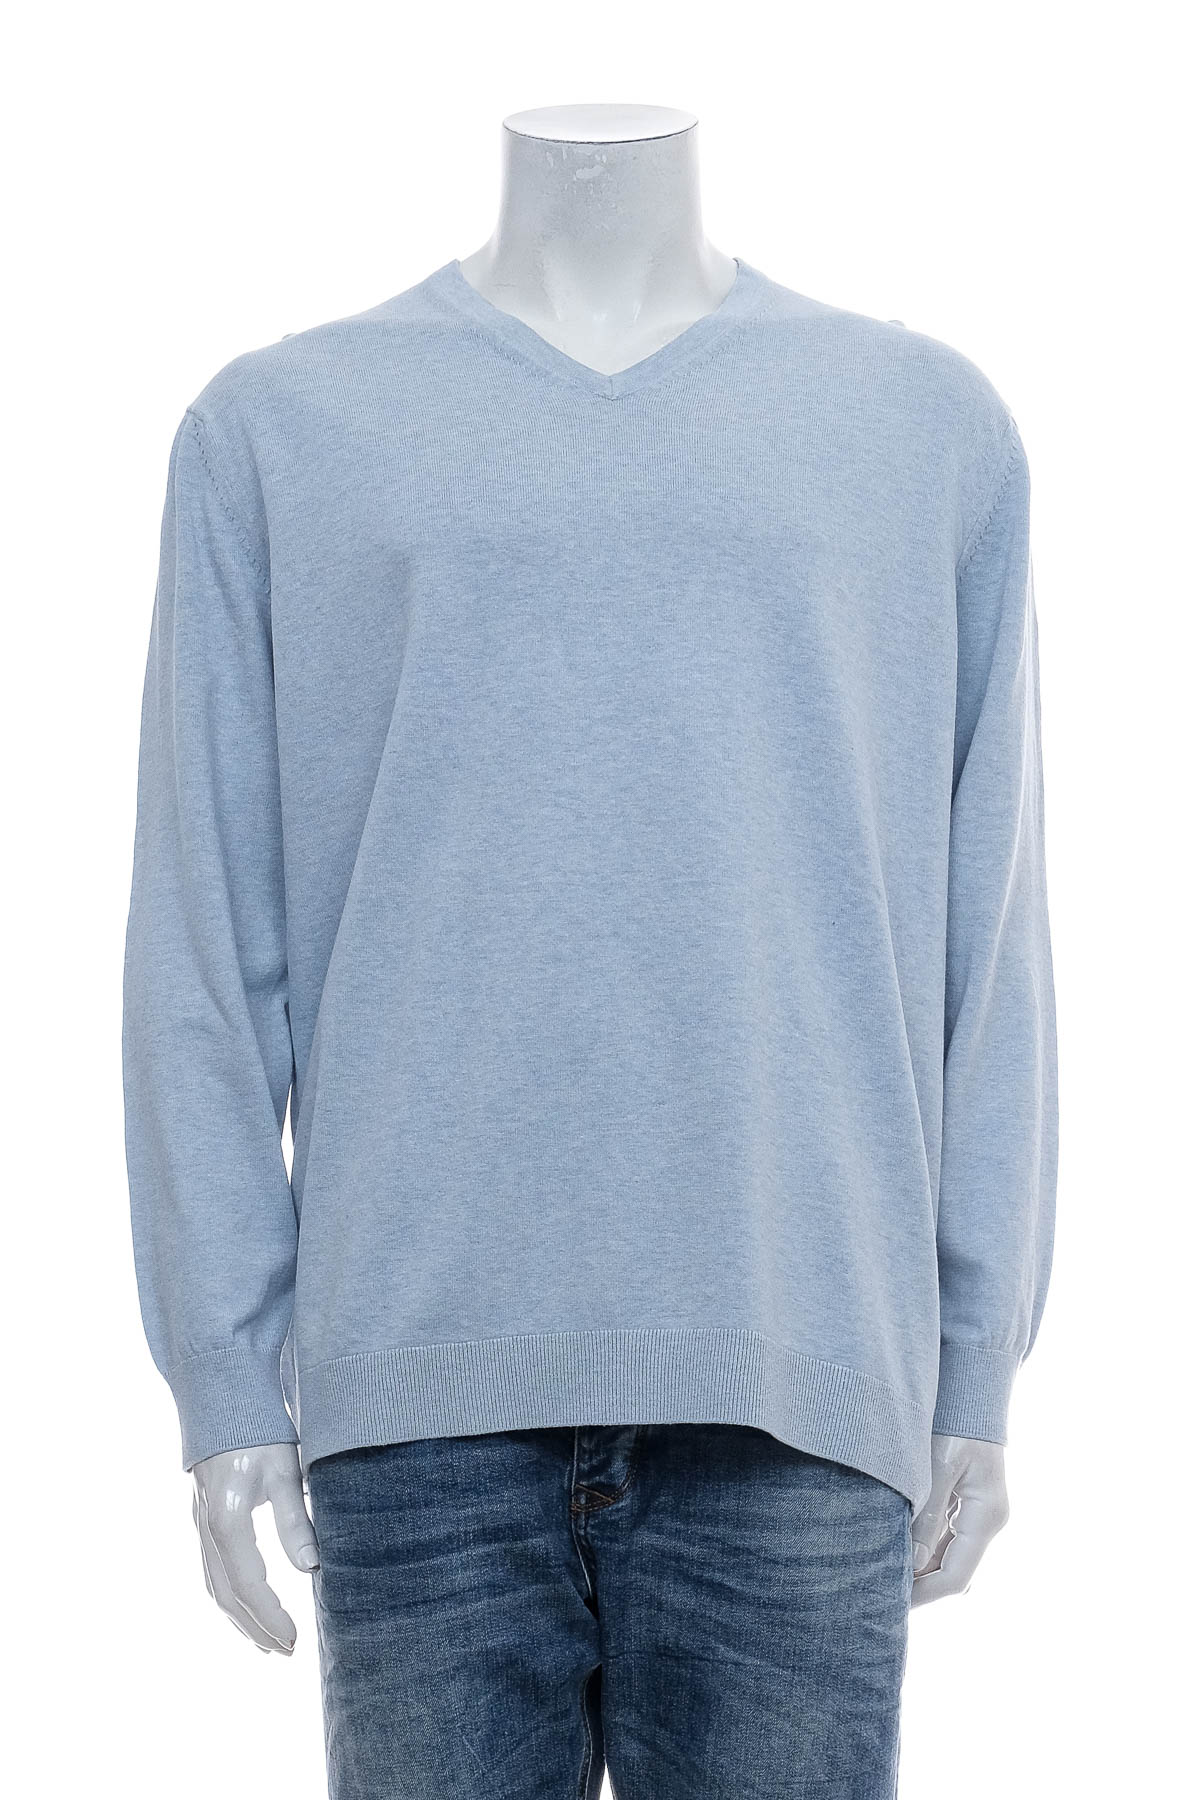 Men's sweater - Celio* - 0